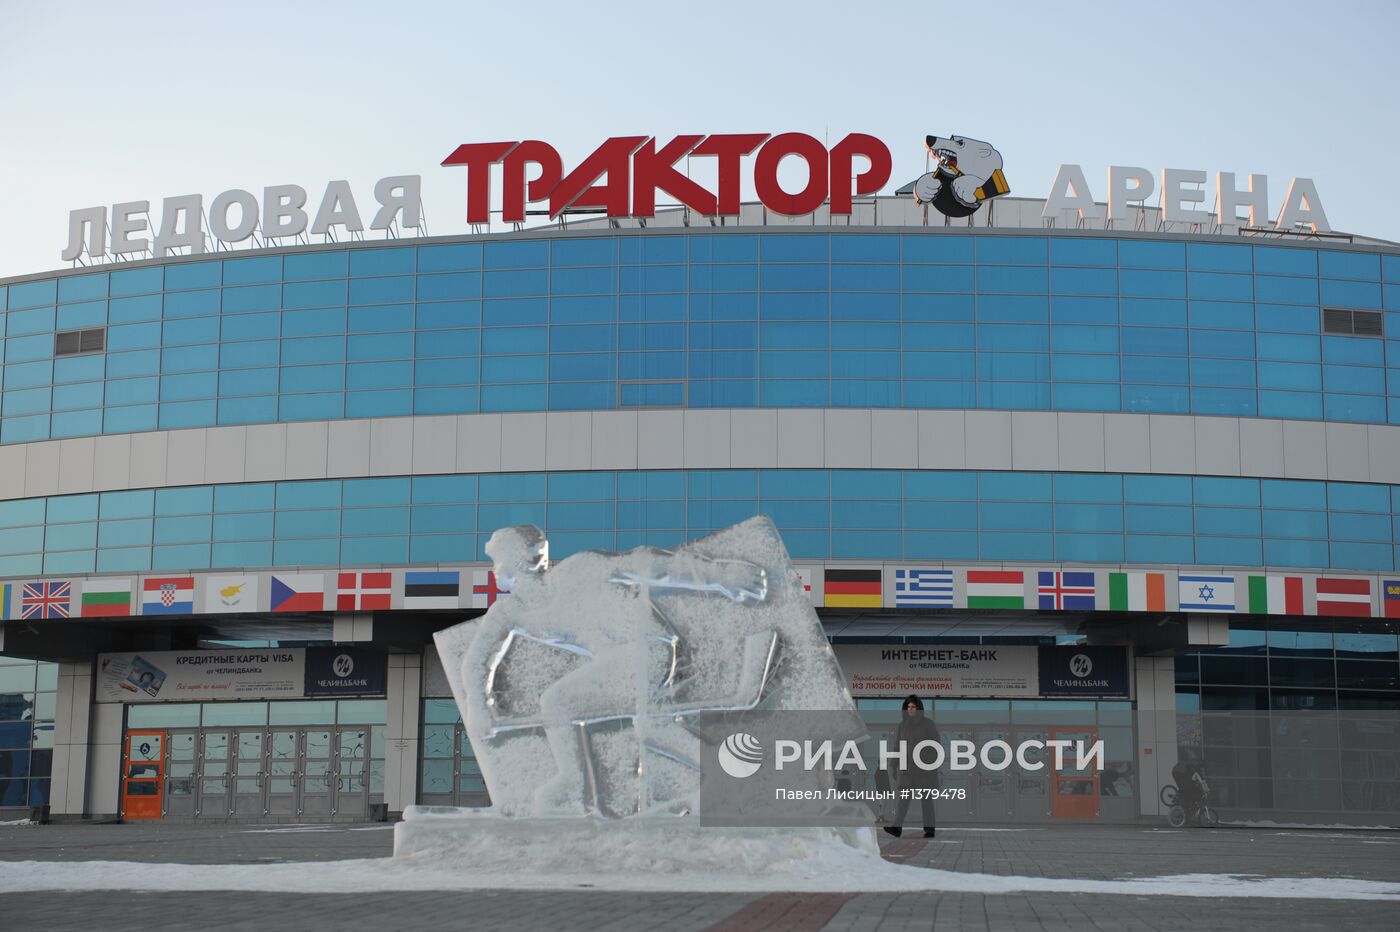 Ледовая арена "Трактор" в Челябинске